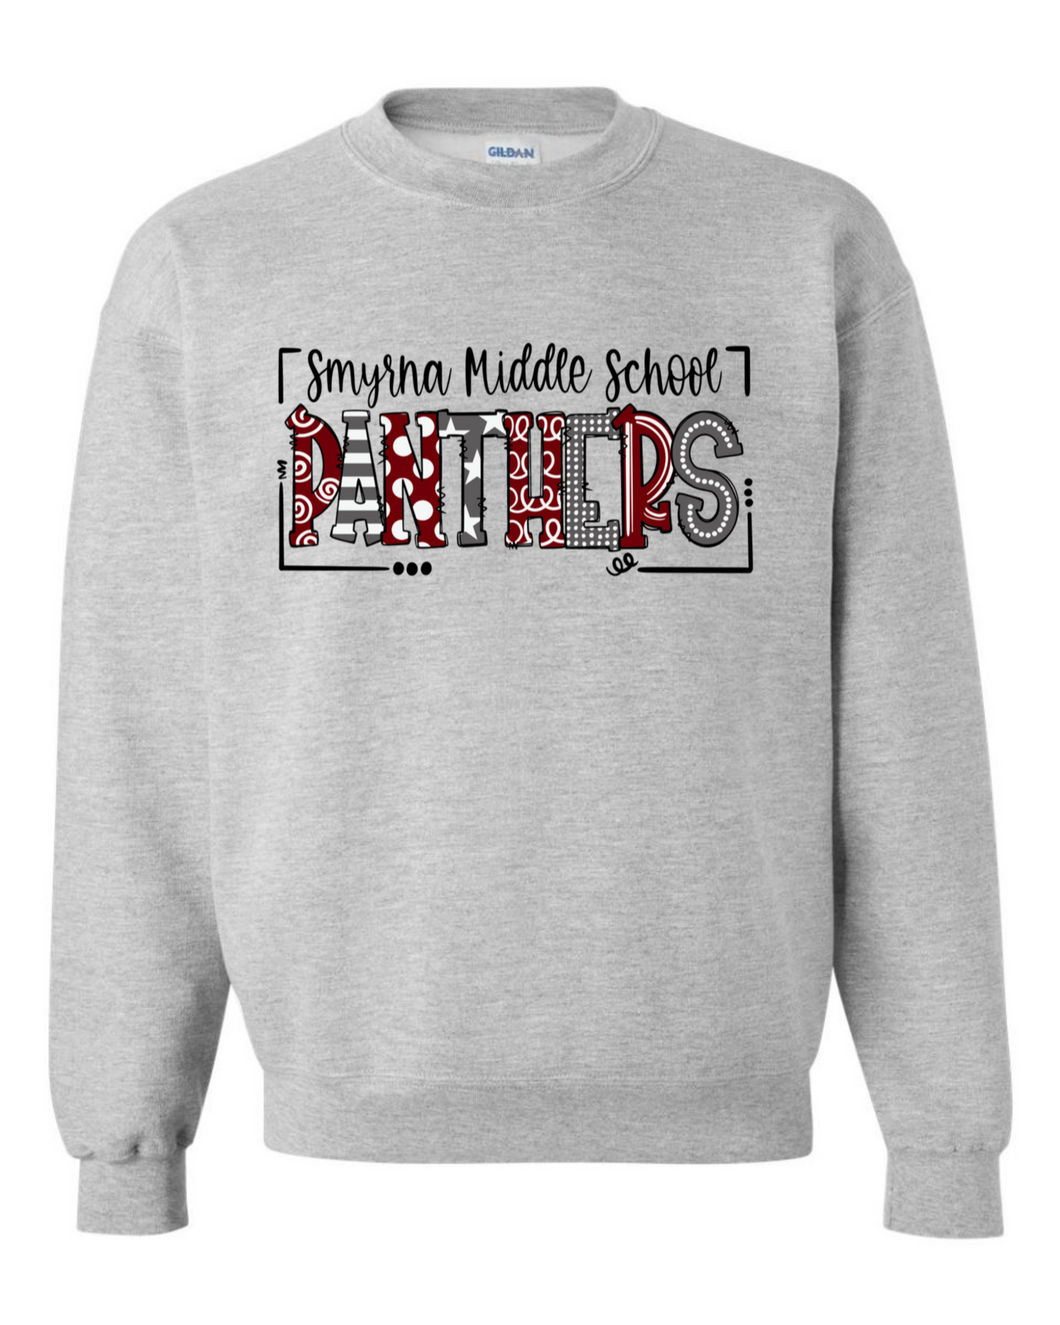 Smyrna Middle Doodle Design Sweatshirt